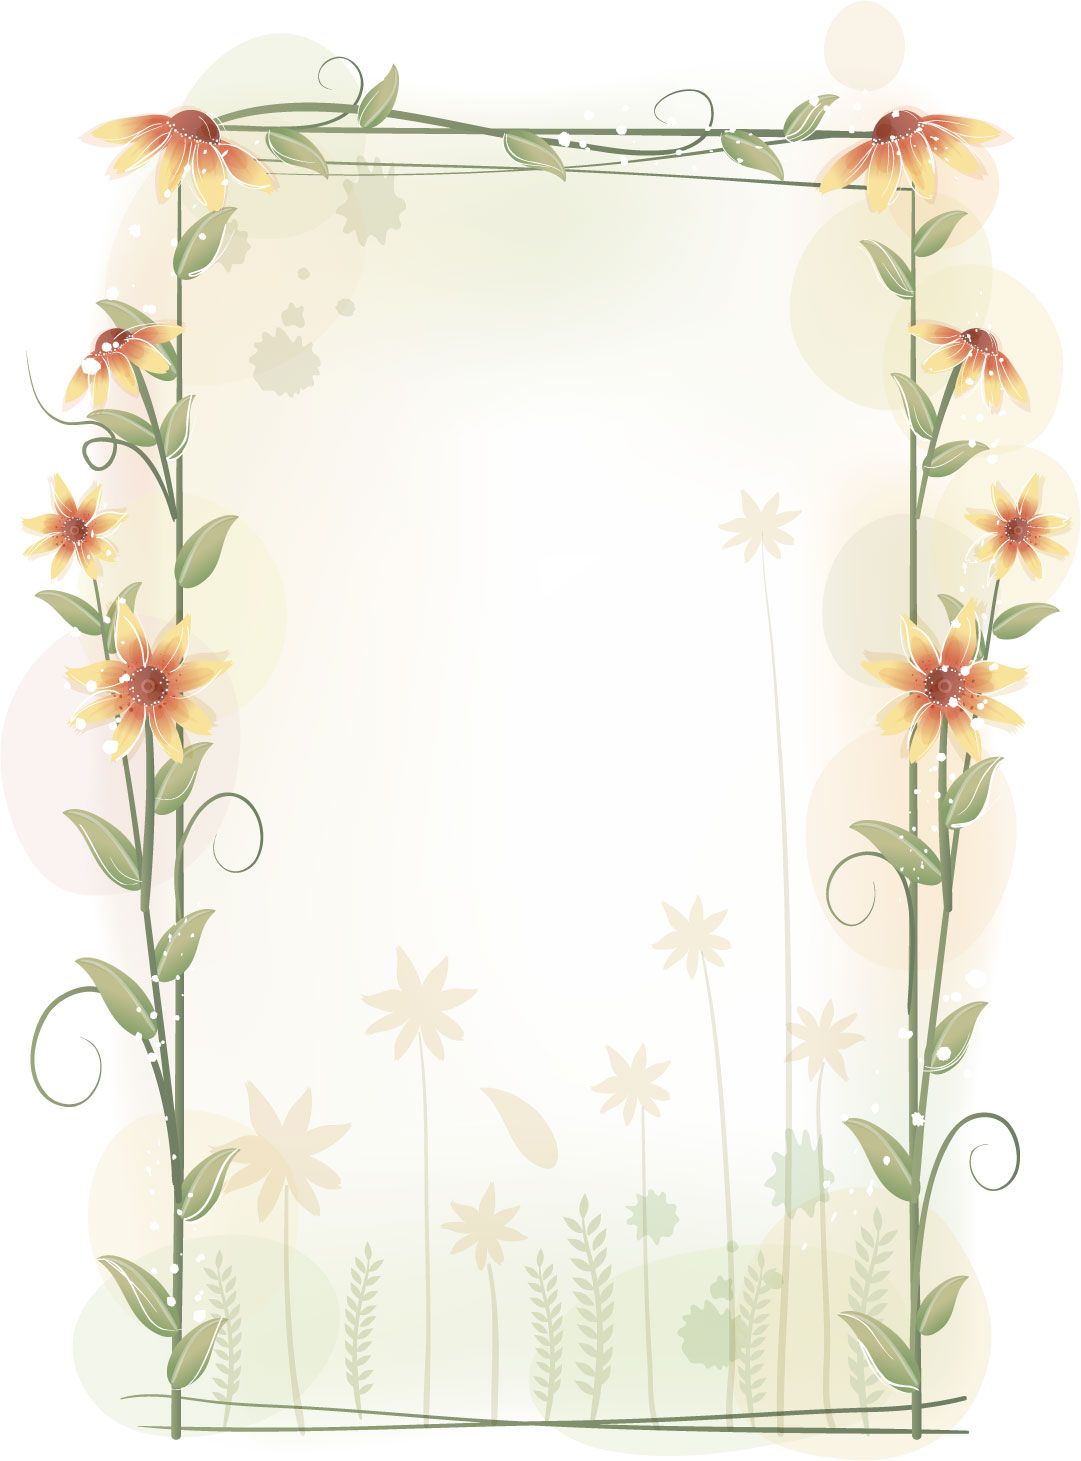 花のイラスト フリー素材 フレーム枠no 460 縦長 暖色